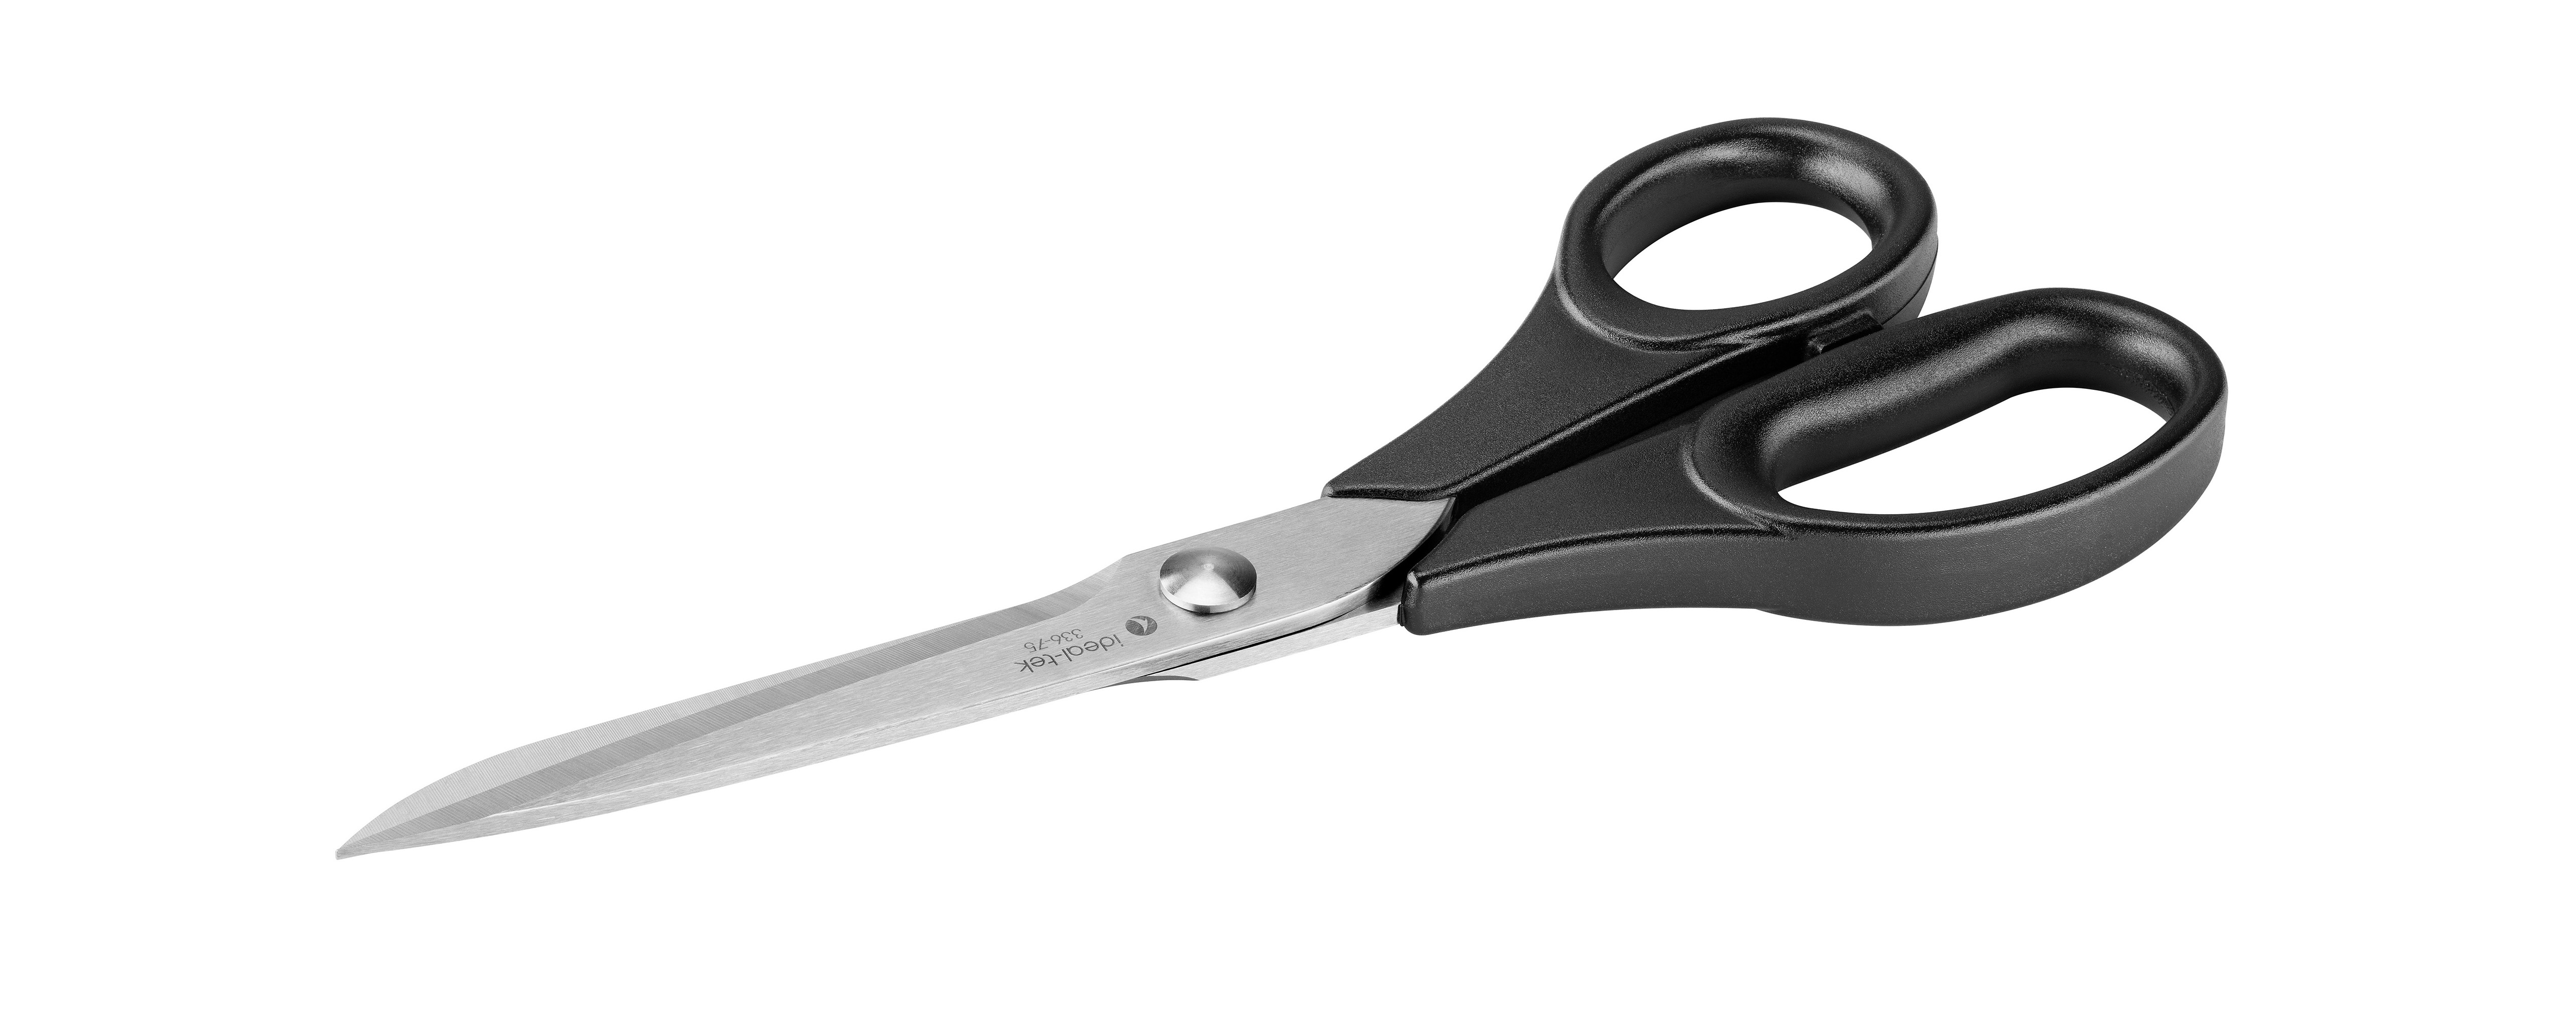 Plic Manicure Scissors Silver